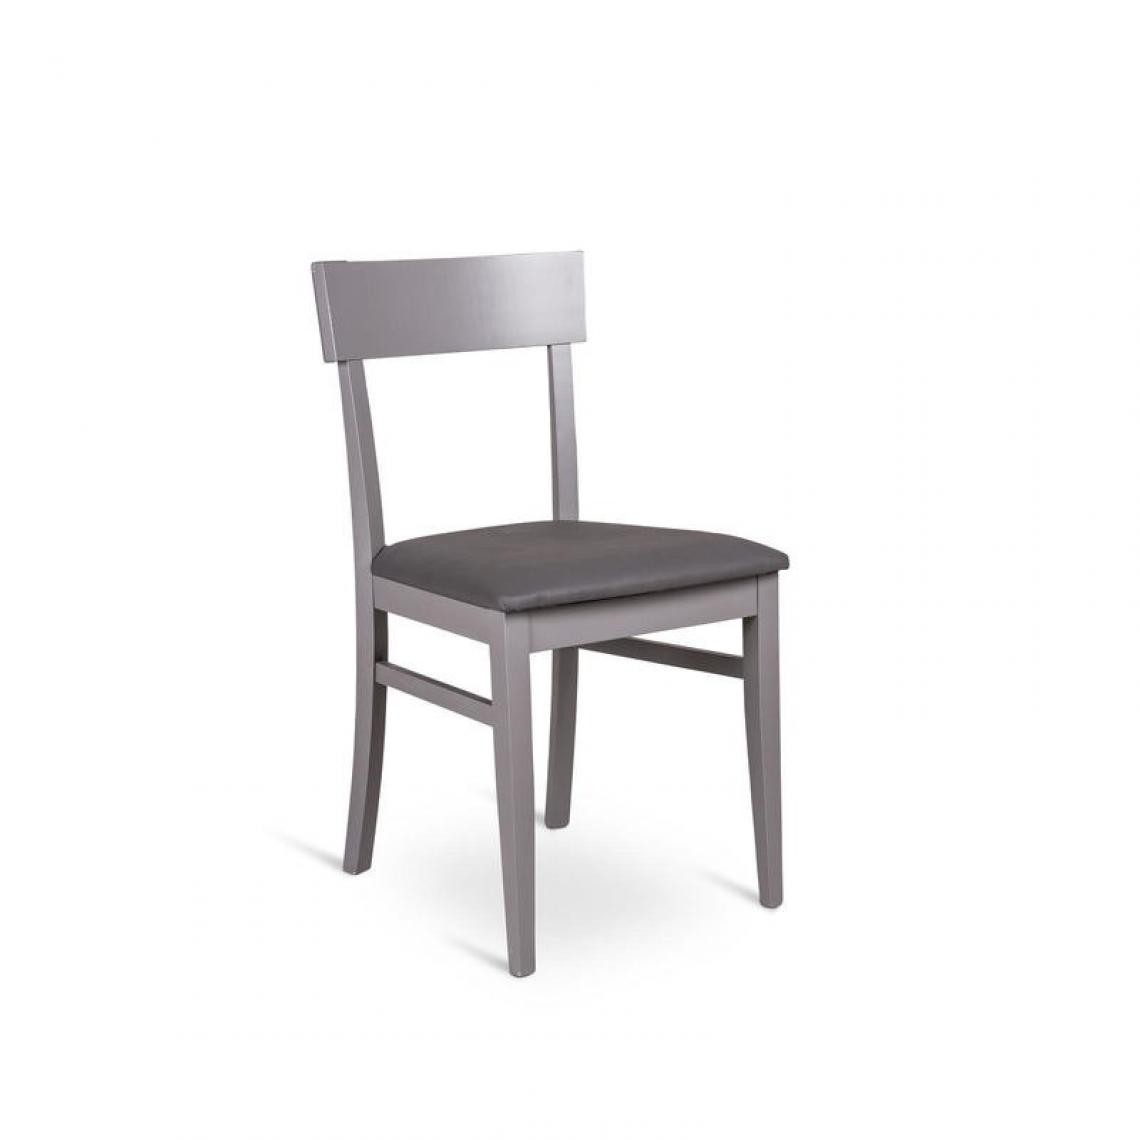 Webmarketpoint - Chaise en bois laqué gris foncé avec assise en simili cuir 44x45xh. 82cm - Chaises